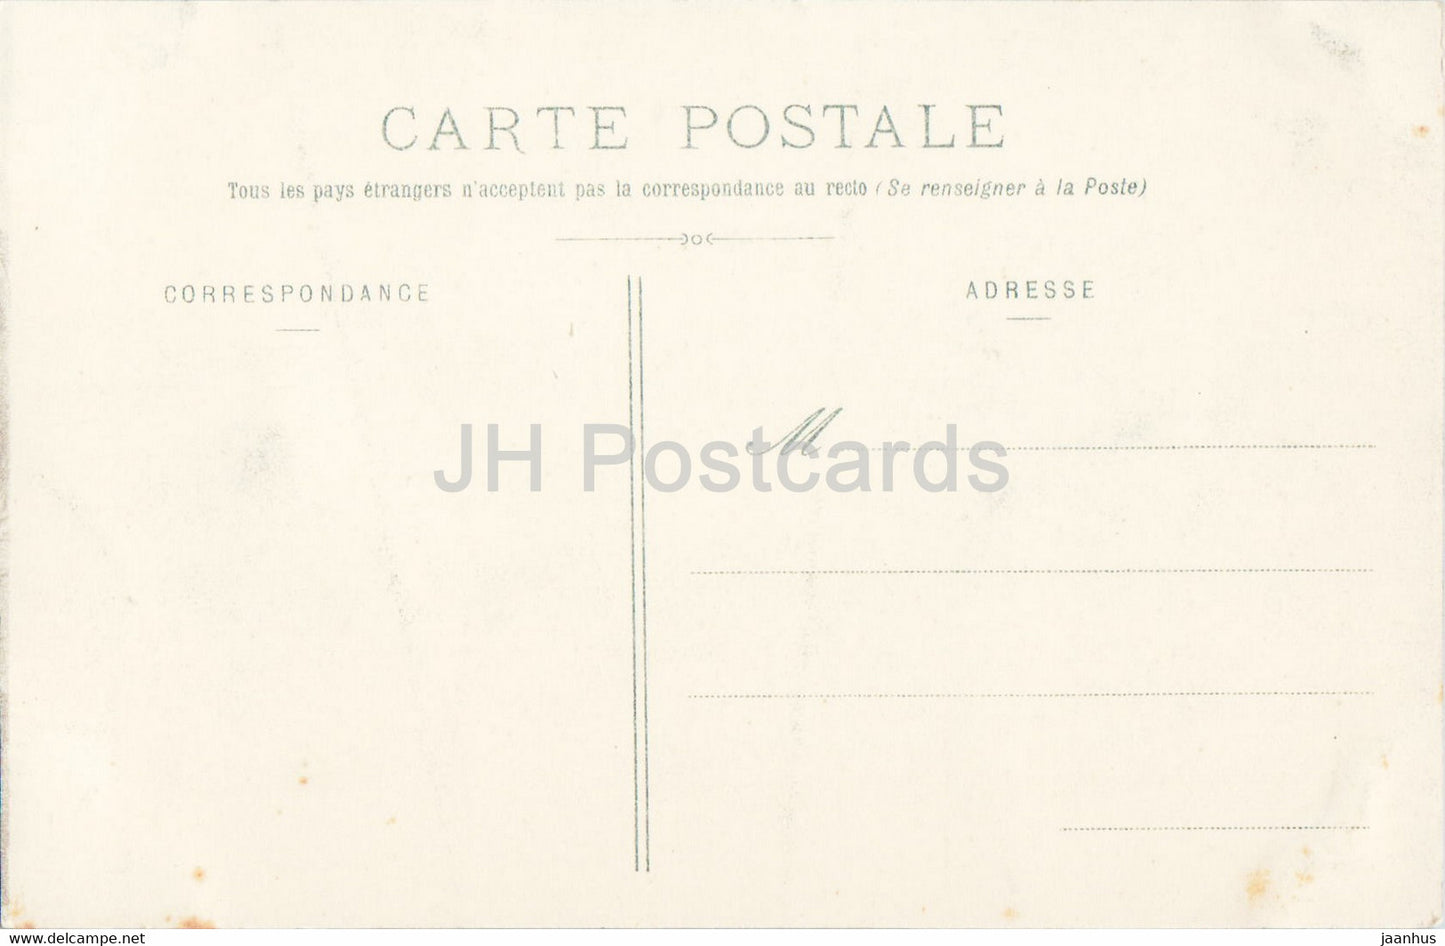 Nancy - Hotel de Ville - 1 - old postcard - France - unused